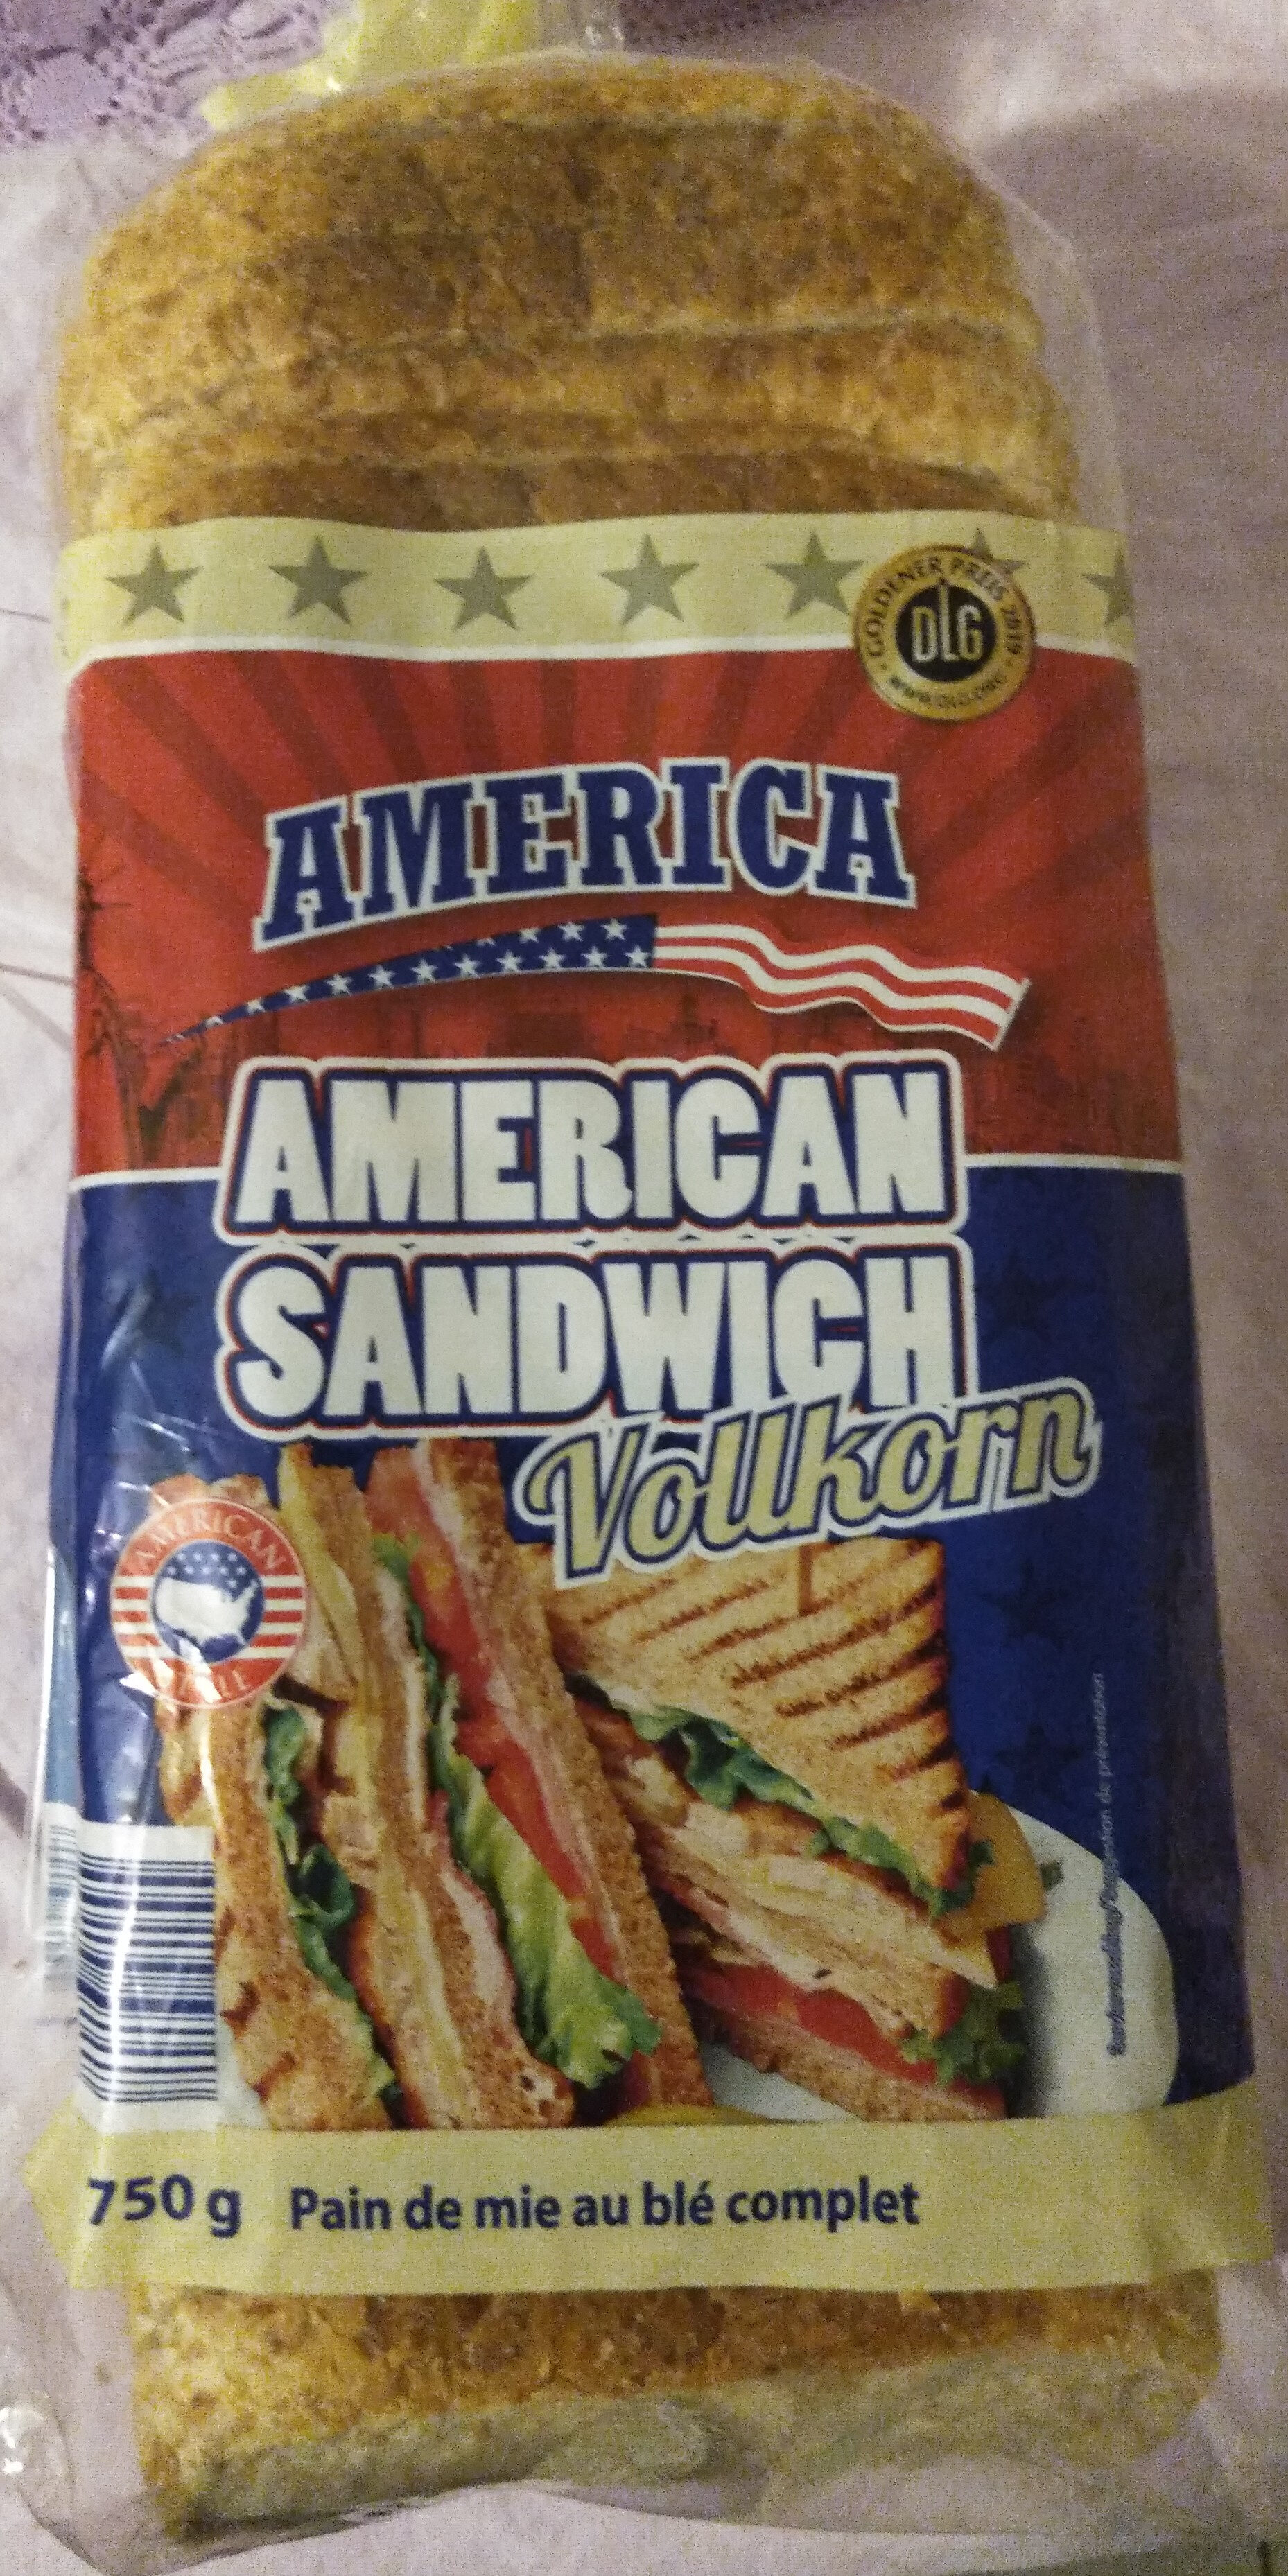 American sandwich vollkorn - Produkt